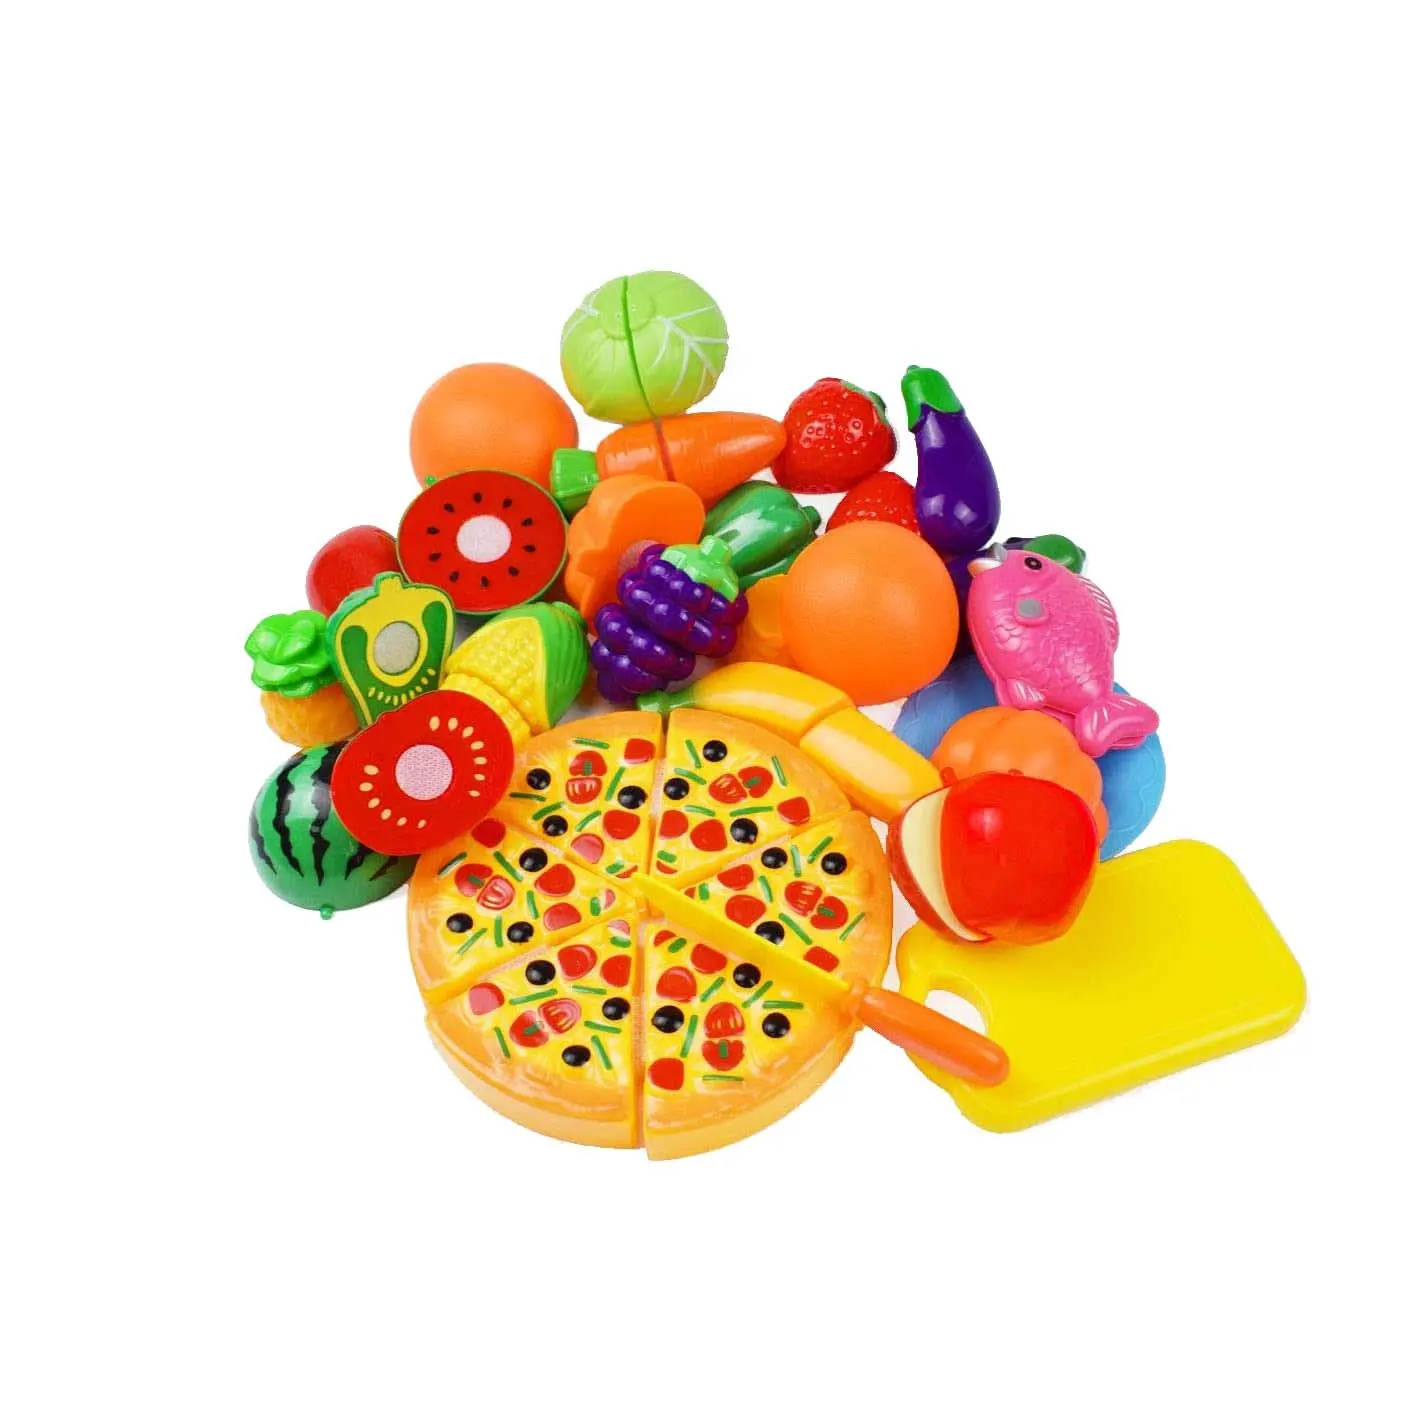 GIBBON Good Design Playing Food Set giocattoli educativi per bambini 24 confezioni un Set Play Kitchen Set di alimenti da taglio in plastica